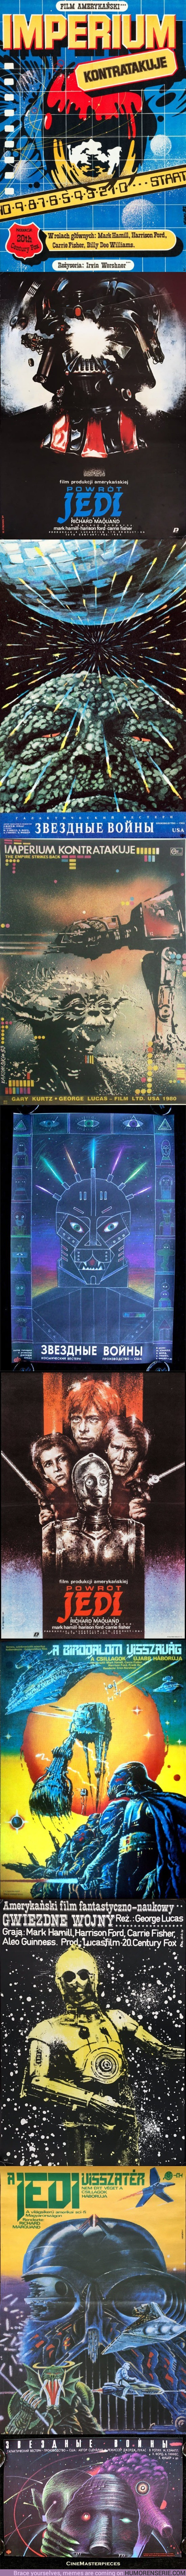 20404 - Así de increíbles eran los pósters de Star Wars en la Unión Soviética